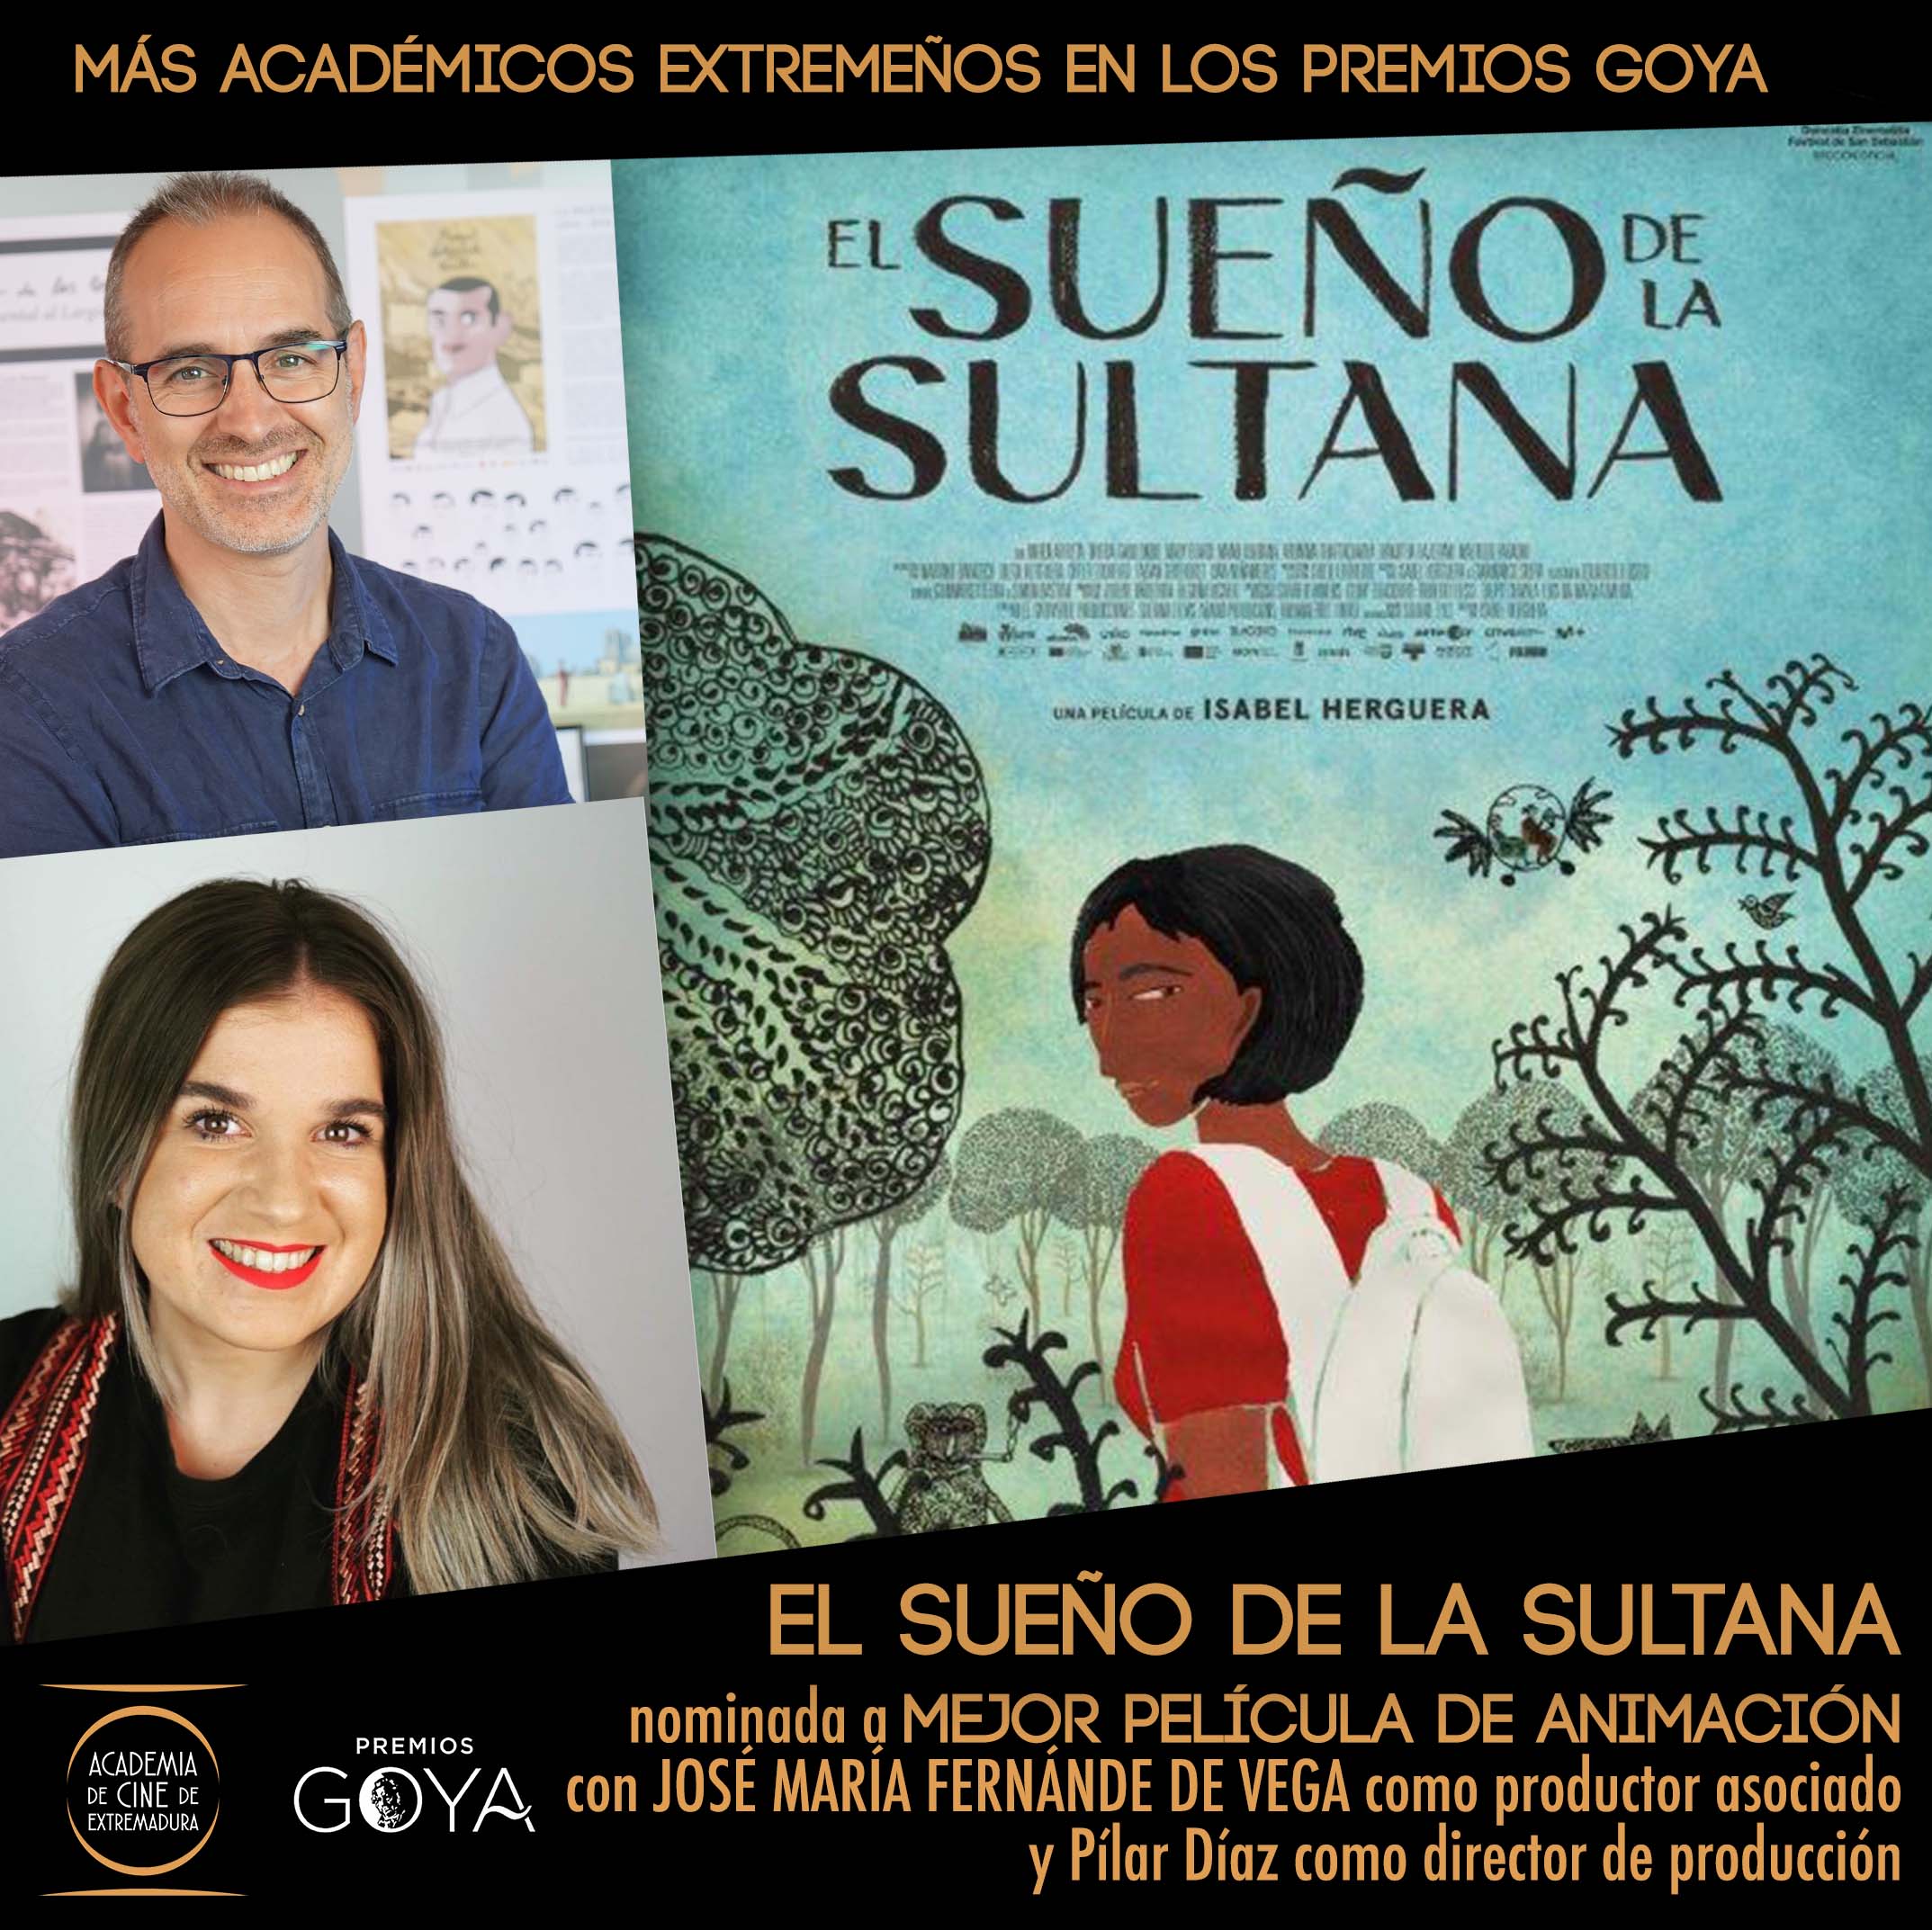 Image 1 of article La Junta de Extremadura felicita a los nominados a los Goya y subraya su apuesta por el cine extremeño